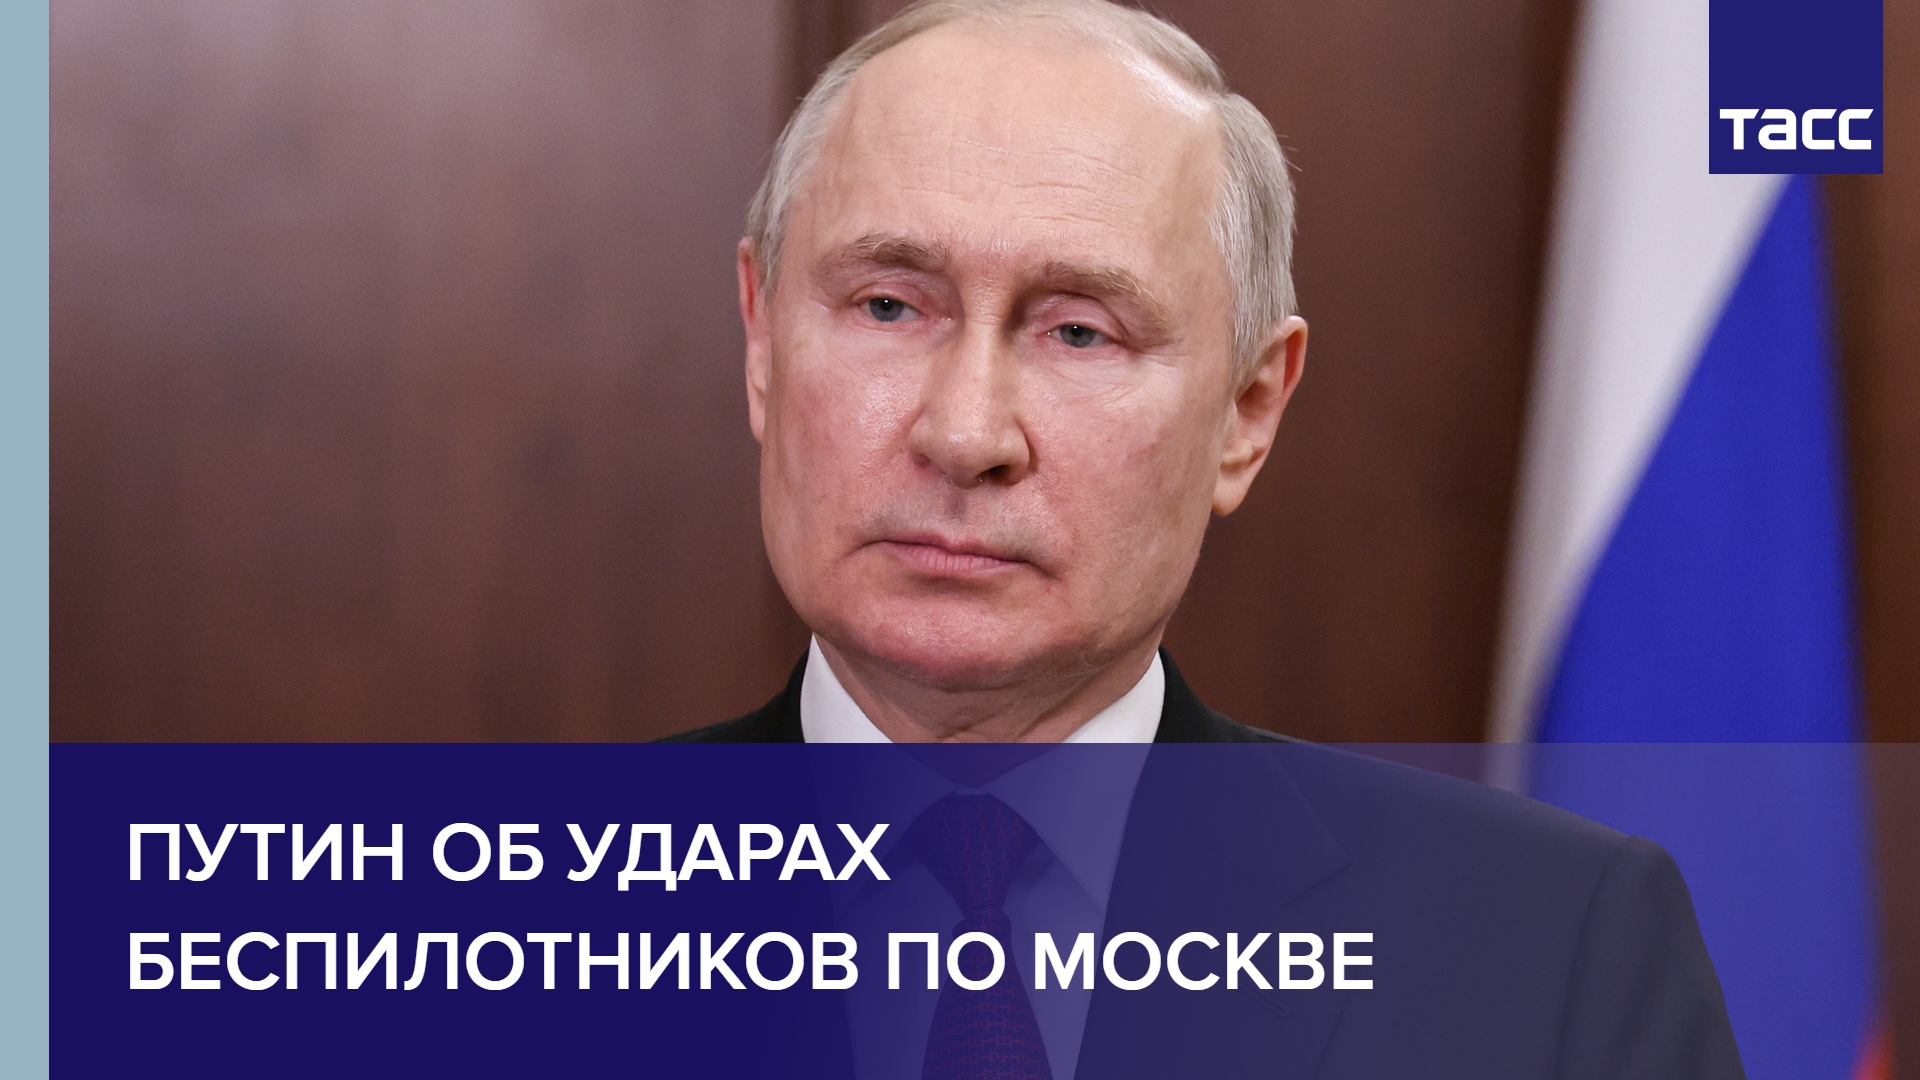 Путин об ударах беспилотников по Москве